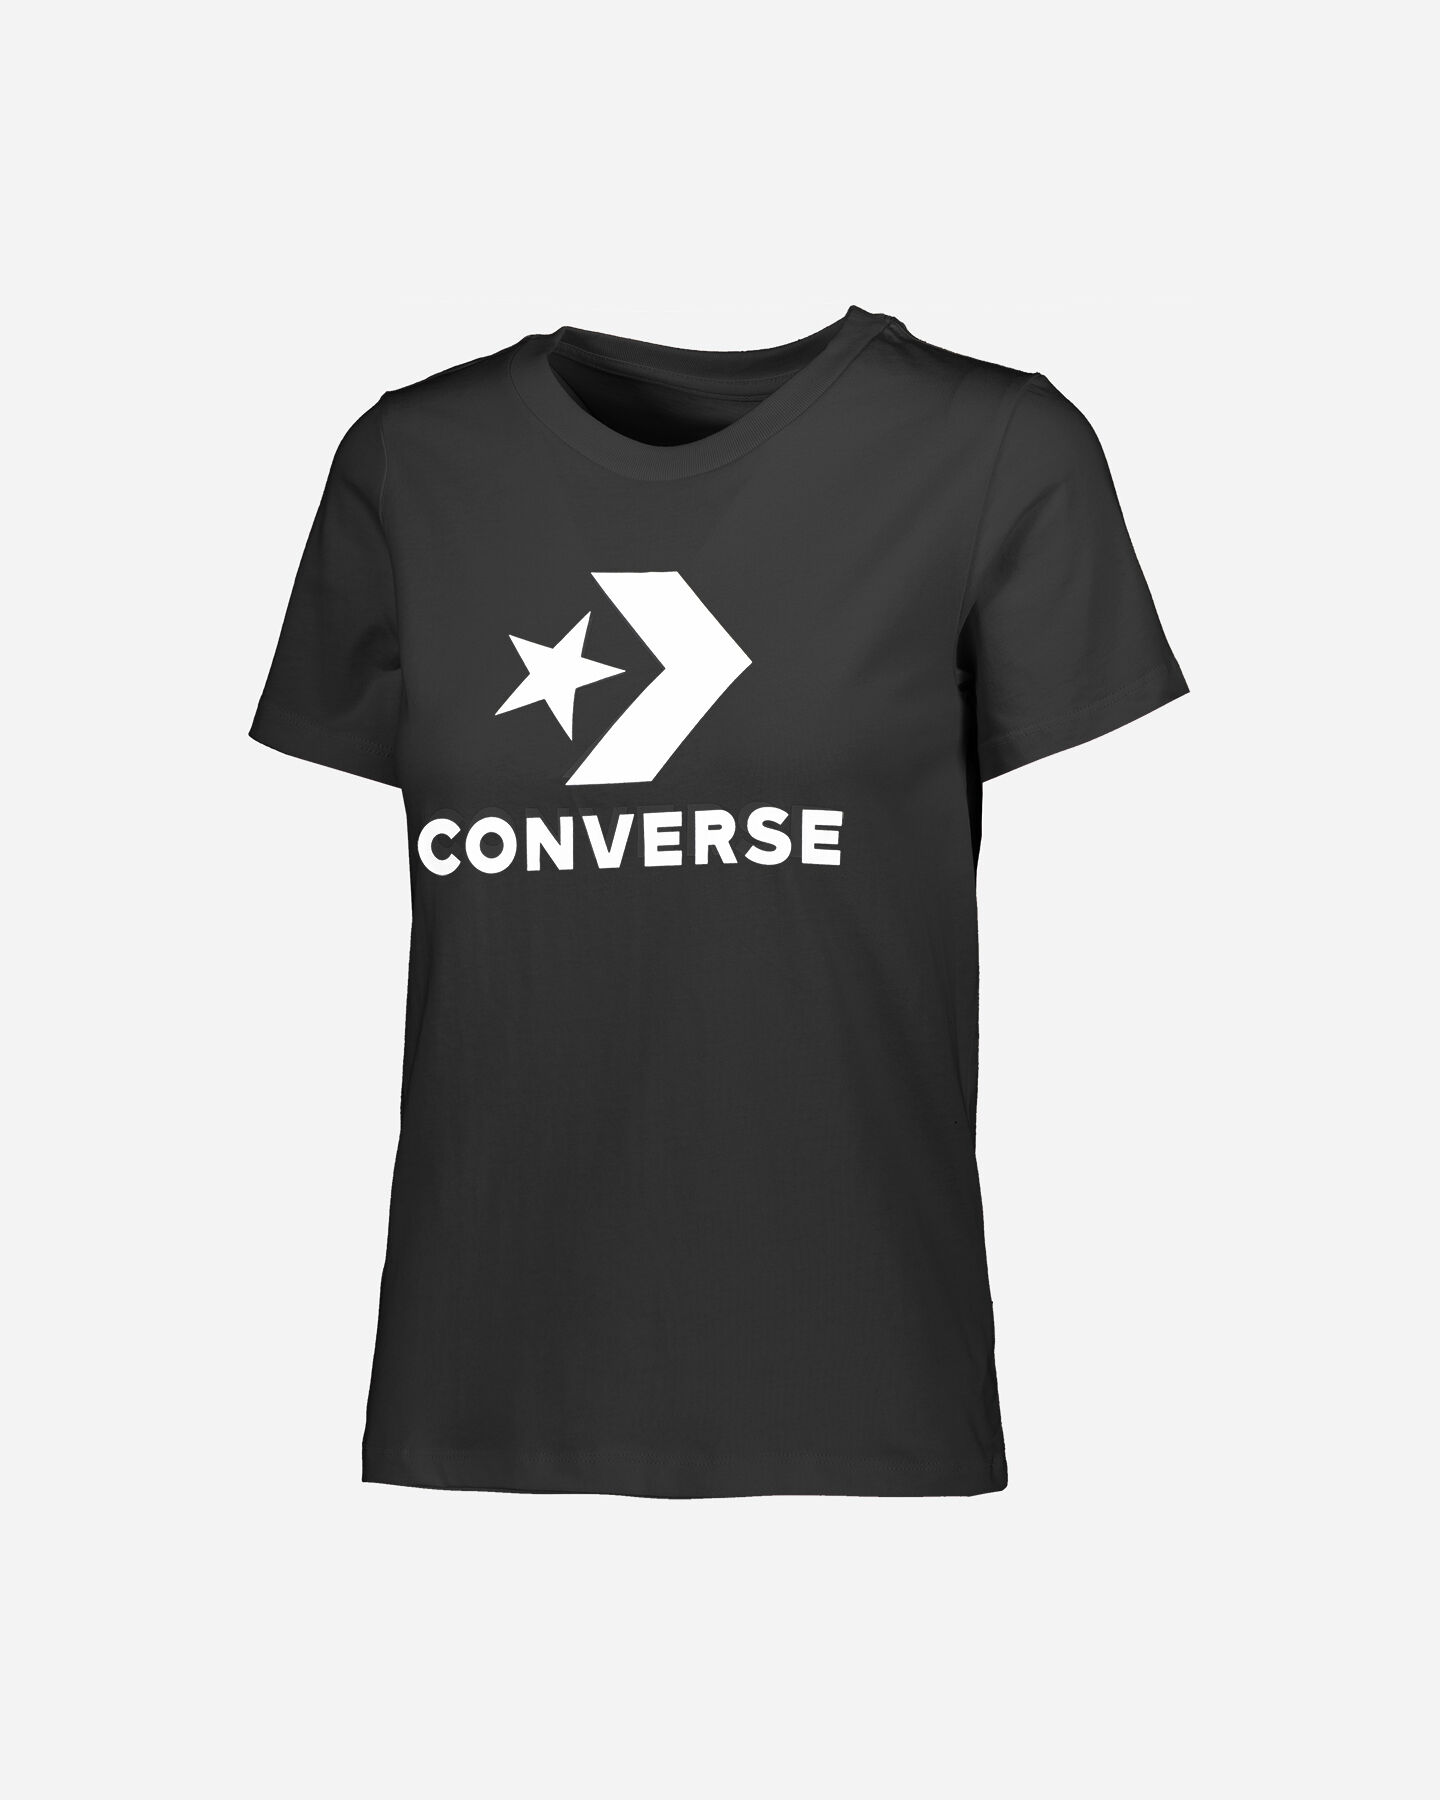  T-Shirt CONVERSE LOGO STAR CHEVRON W S5176854|001|L scatto 0